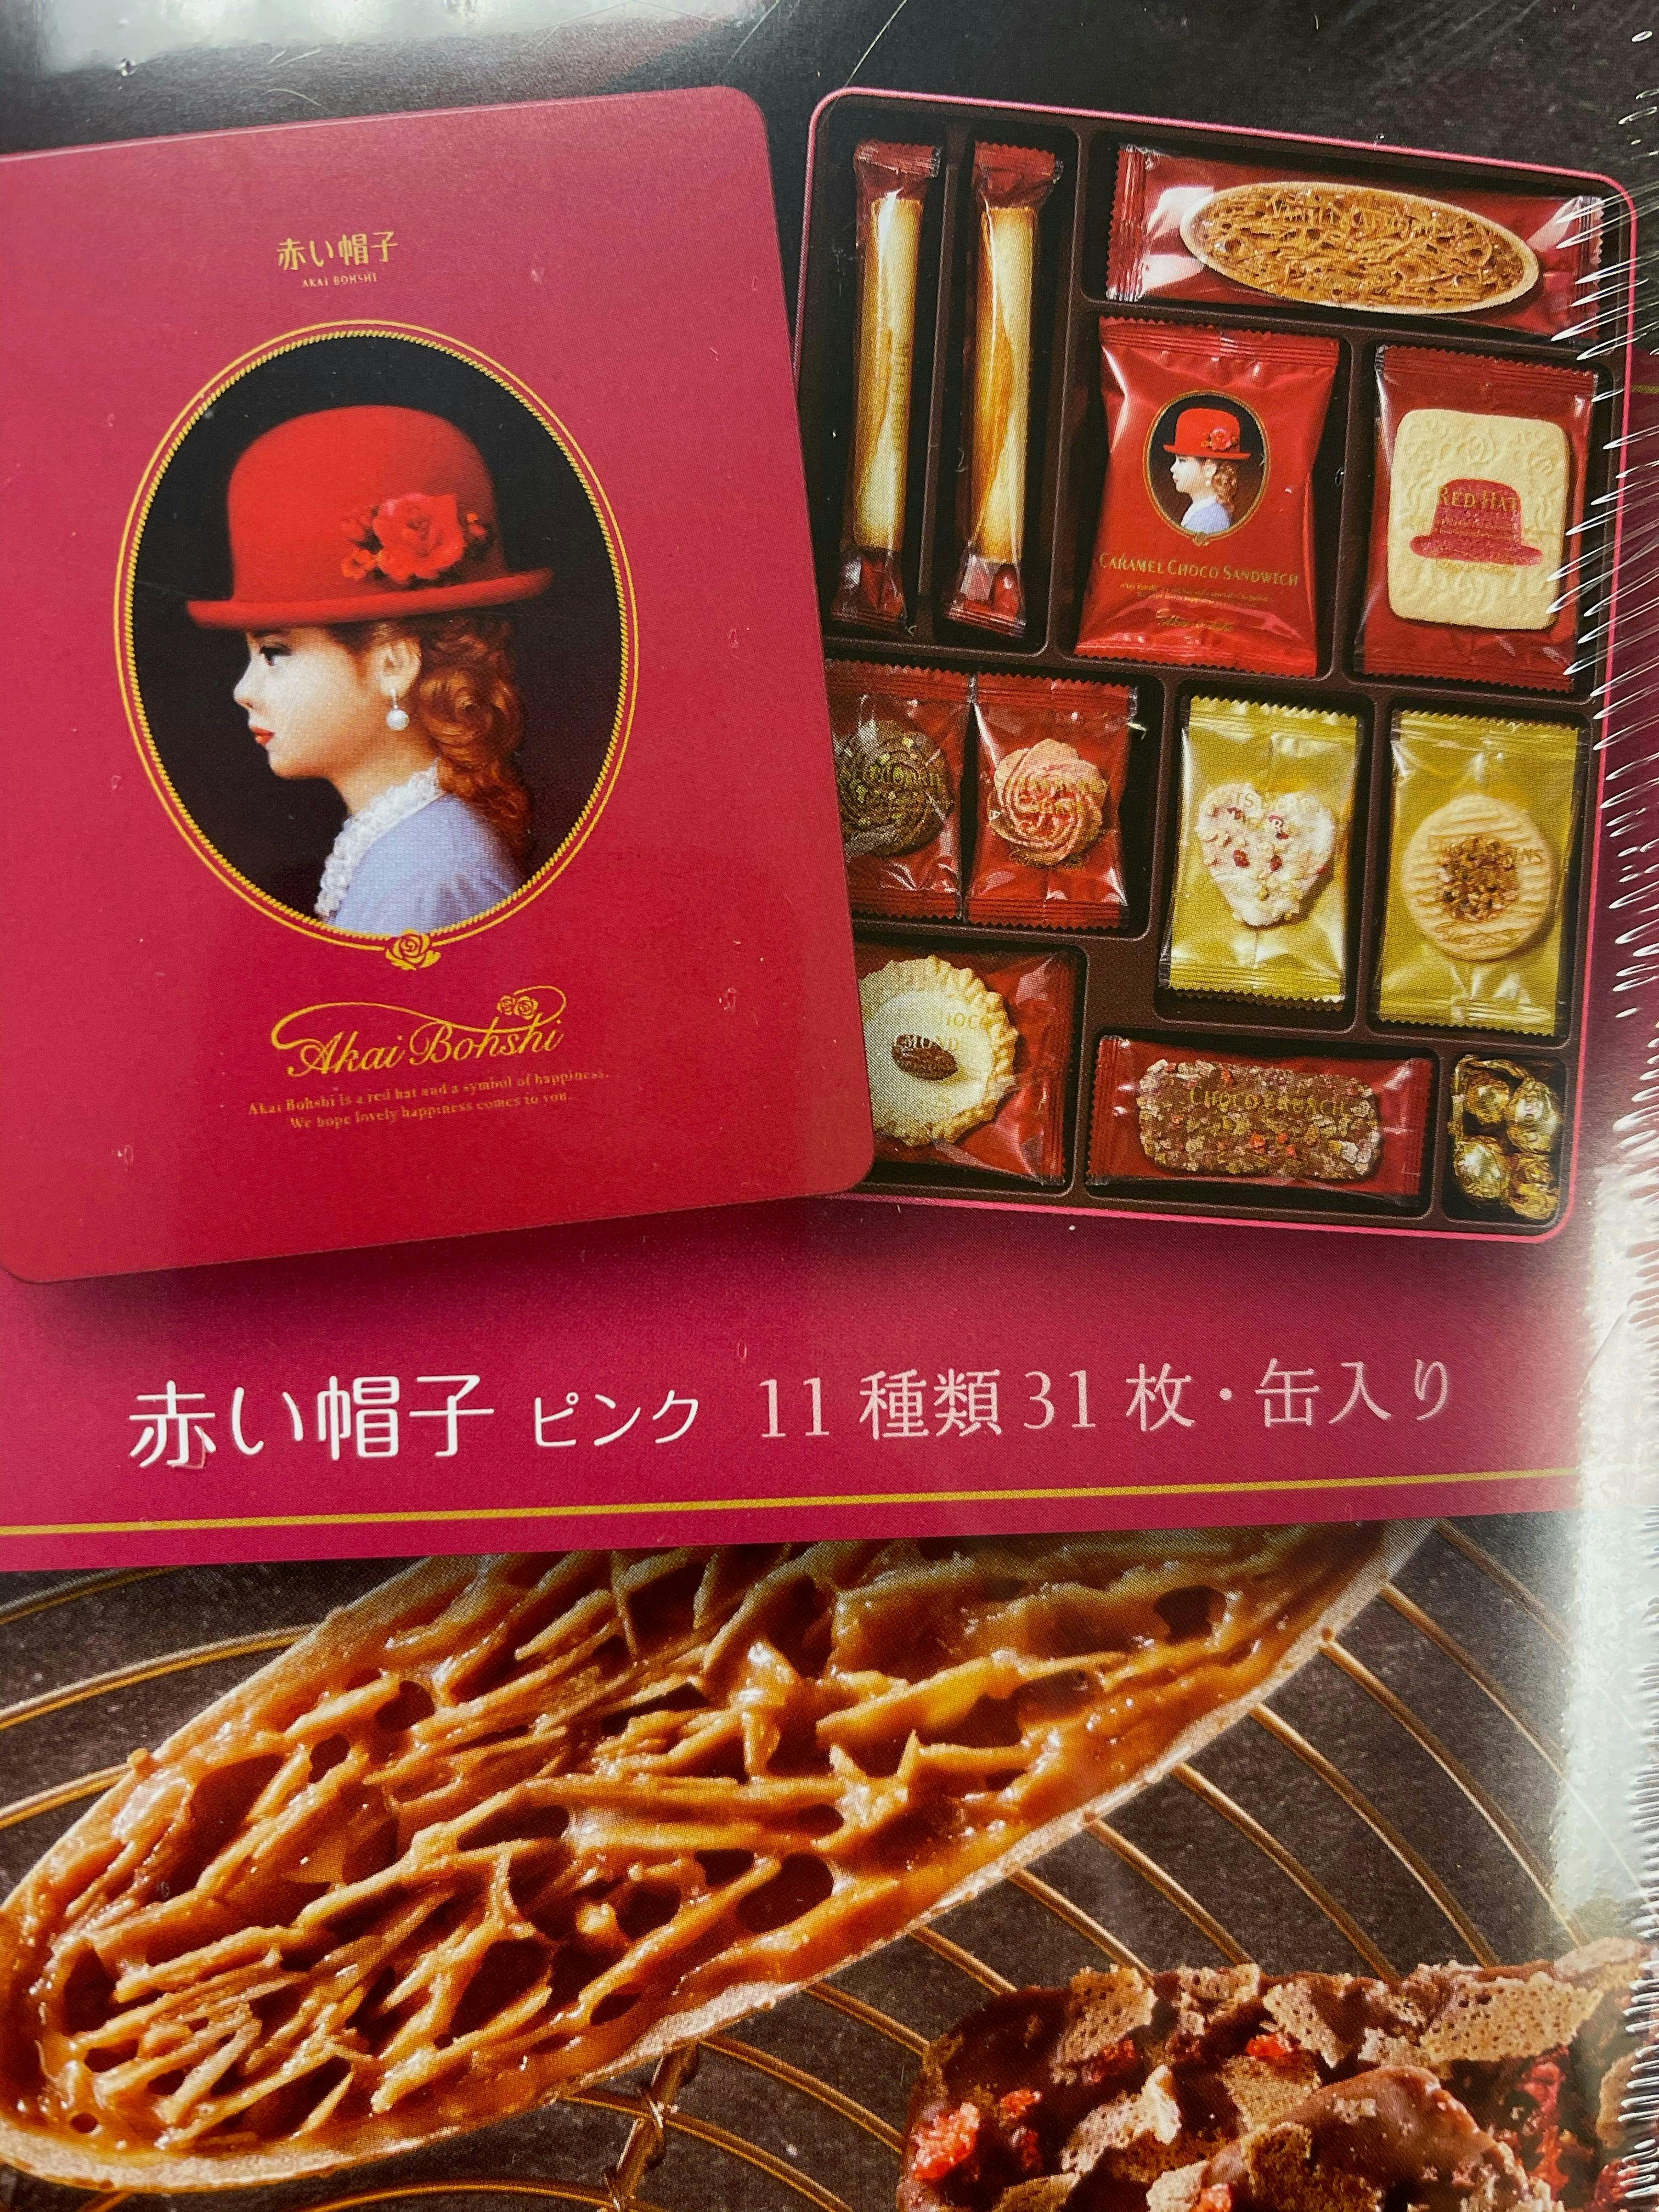 日本进口 新包装红帽子粉色礼盒  11种31枚入 铁盒